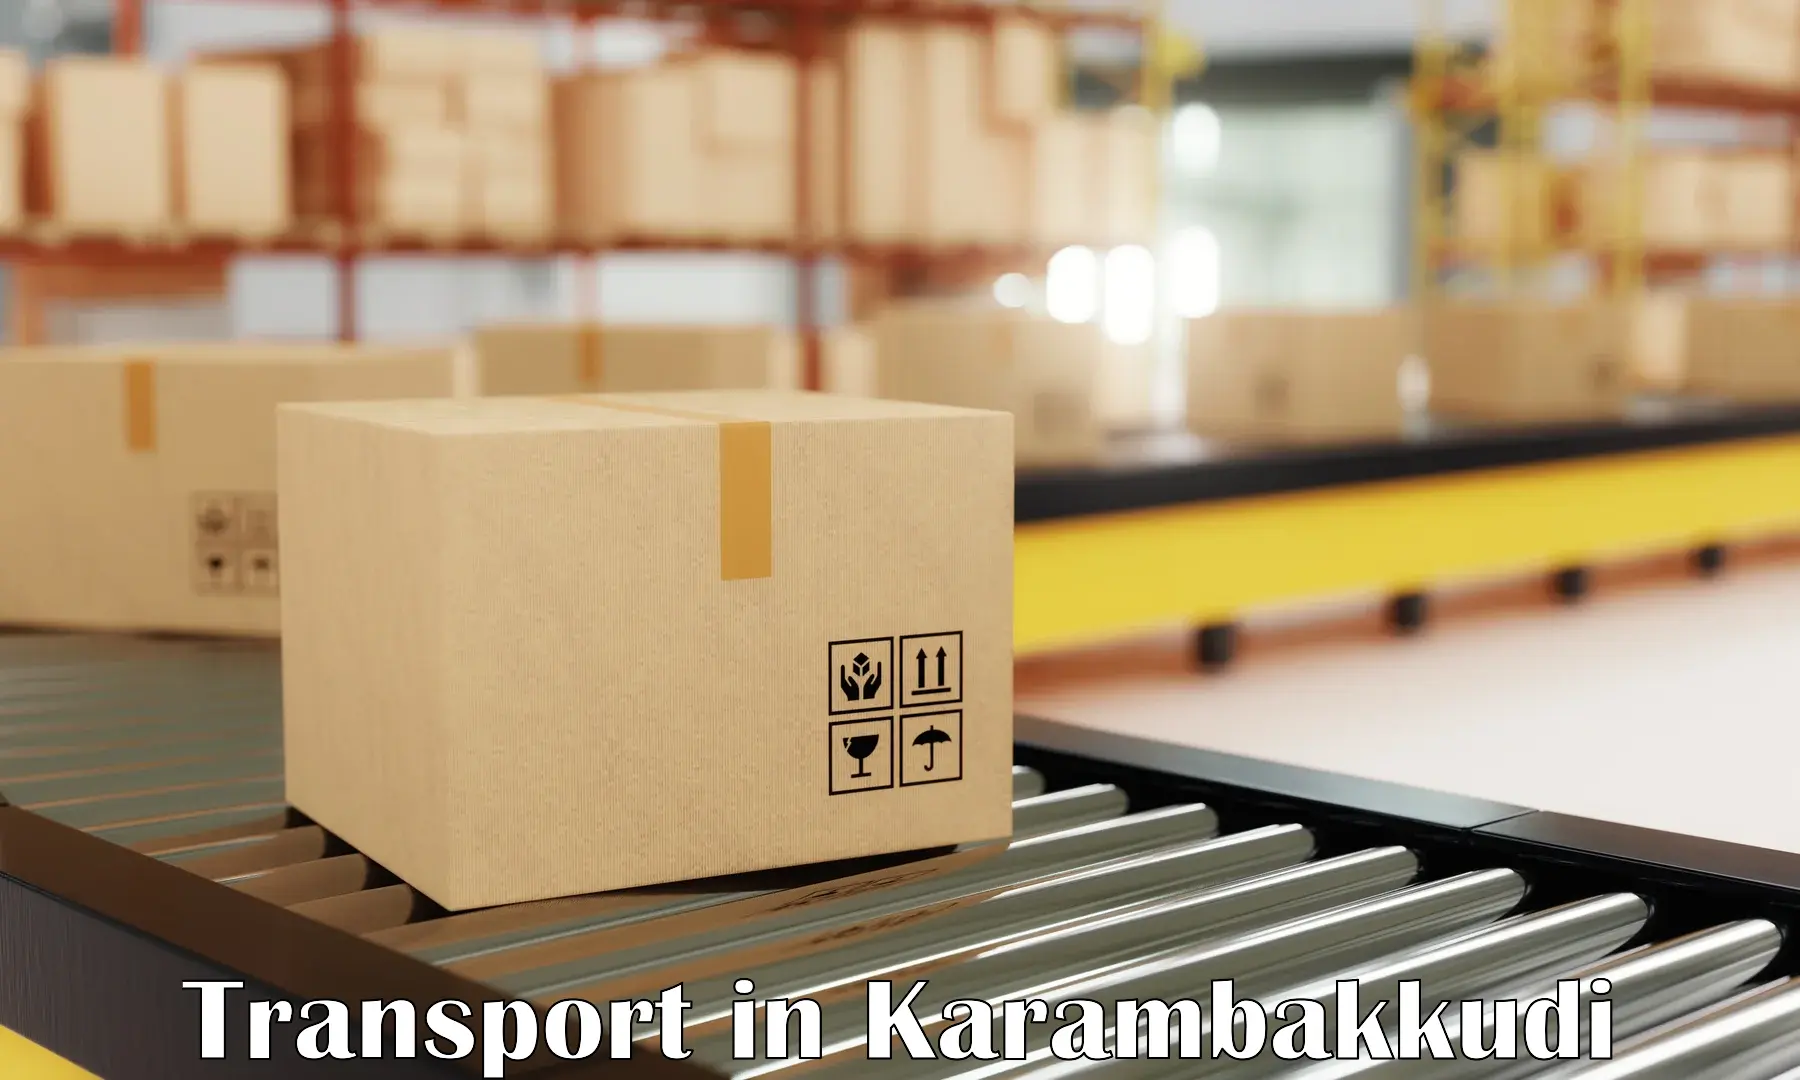 Daily parcel service transport in Karambakkudi